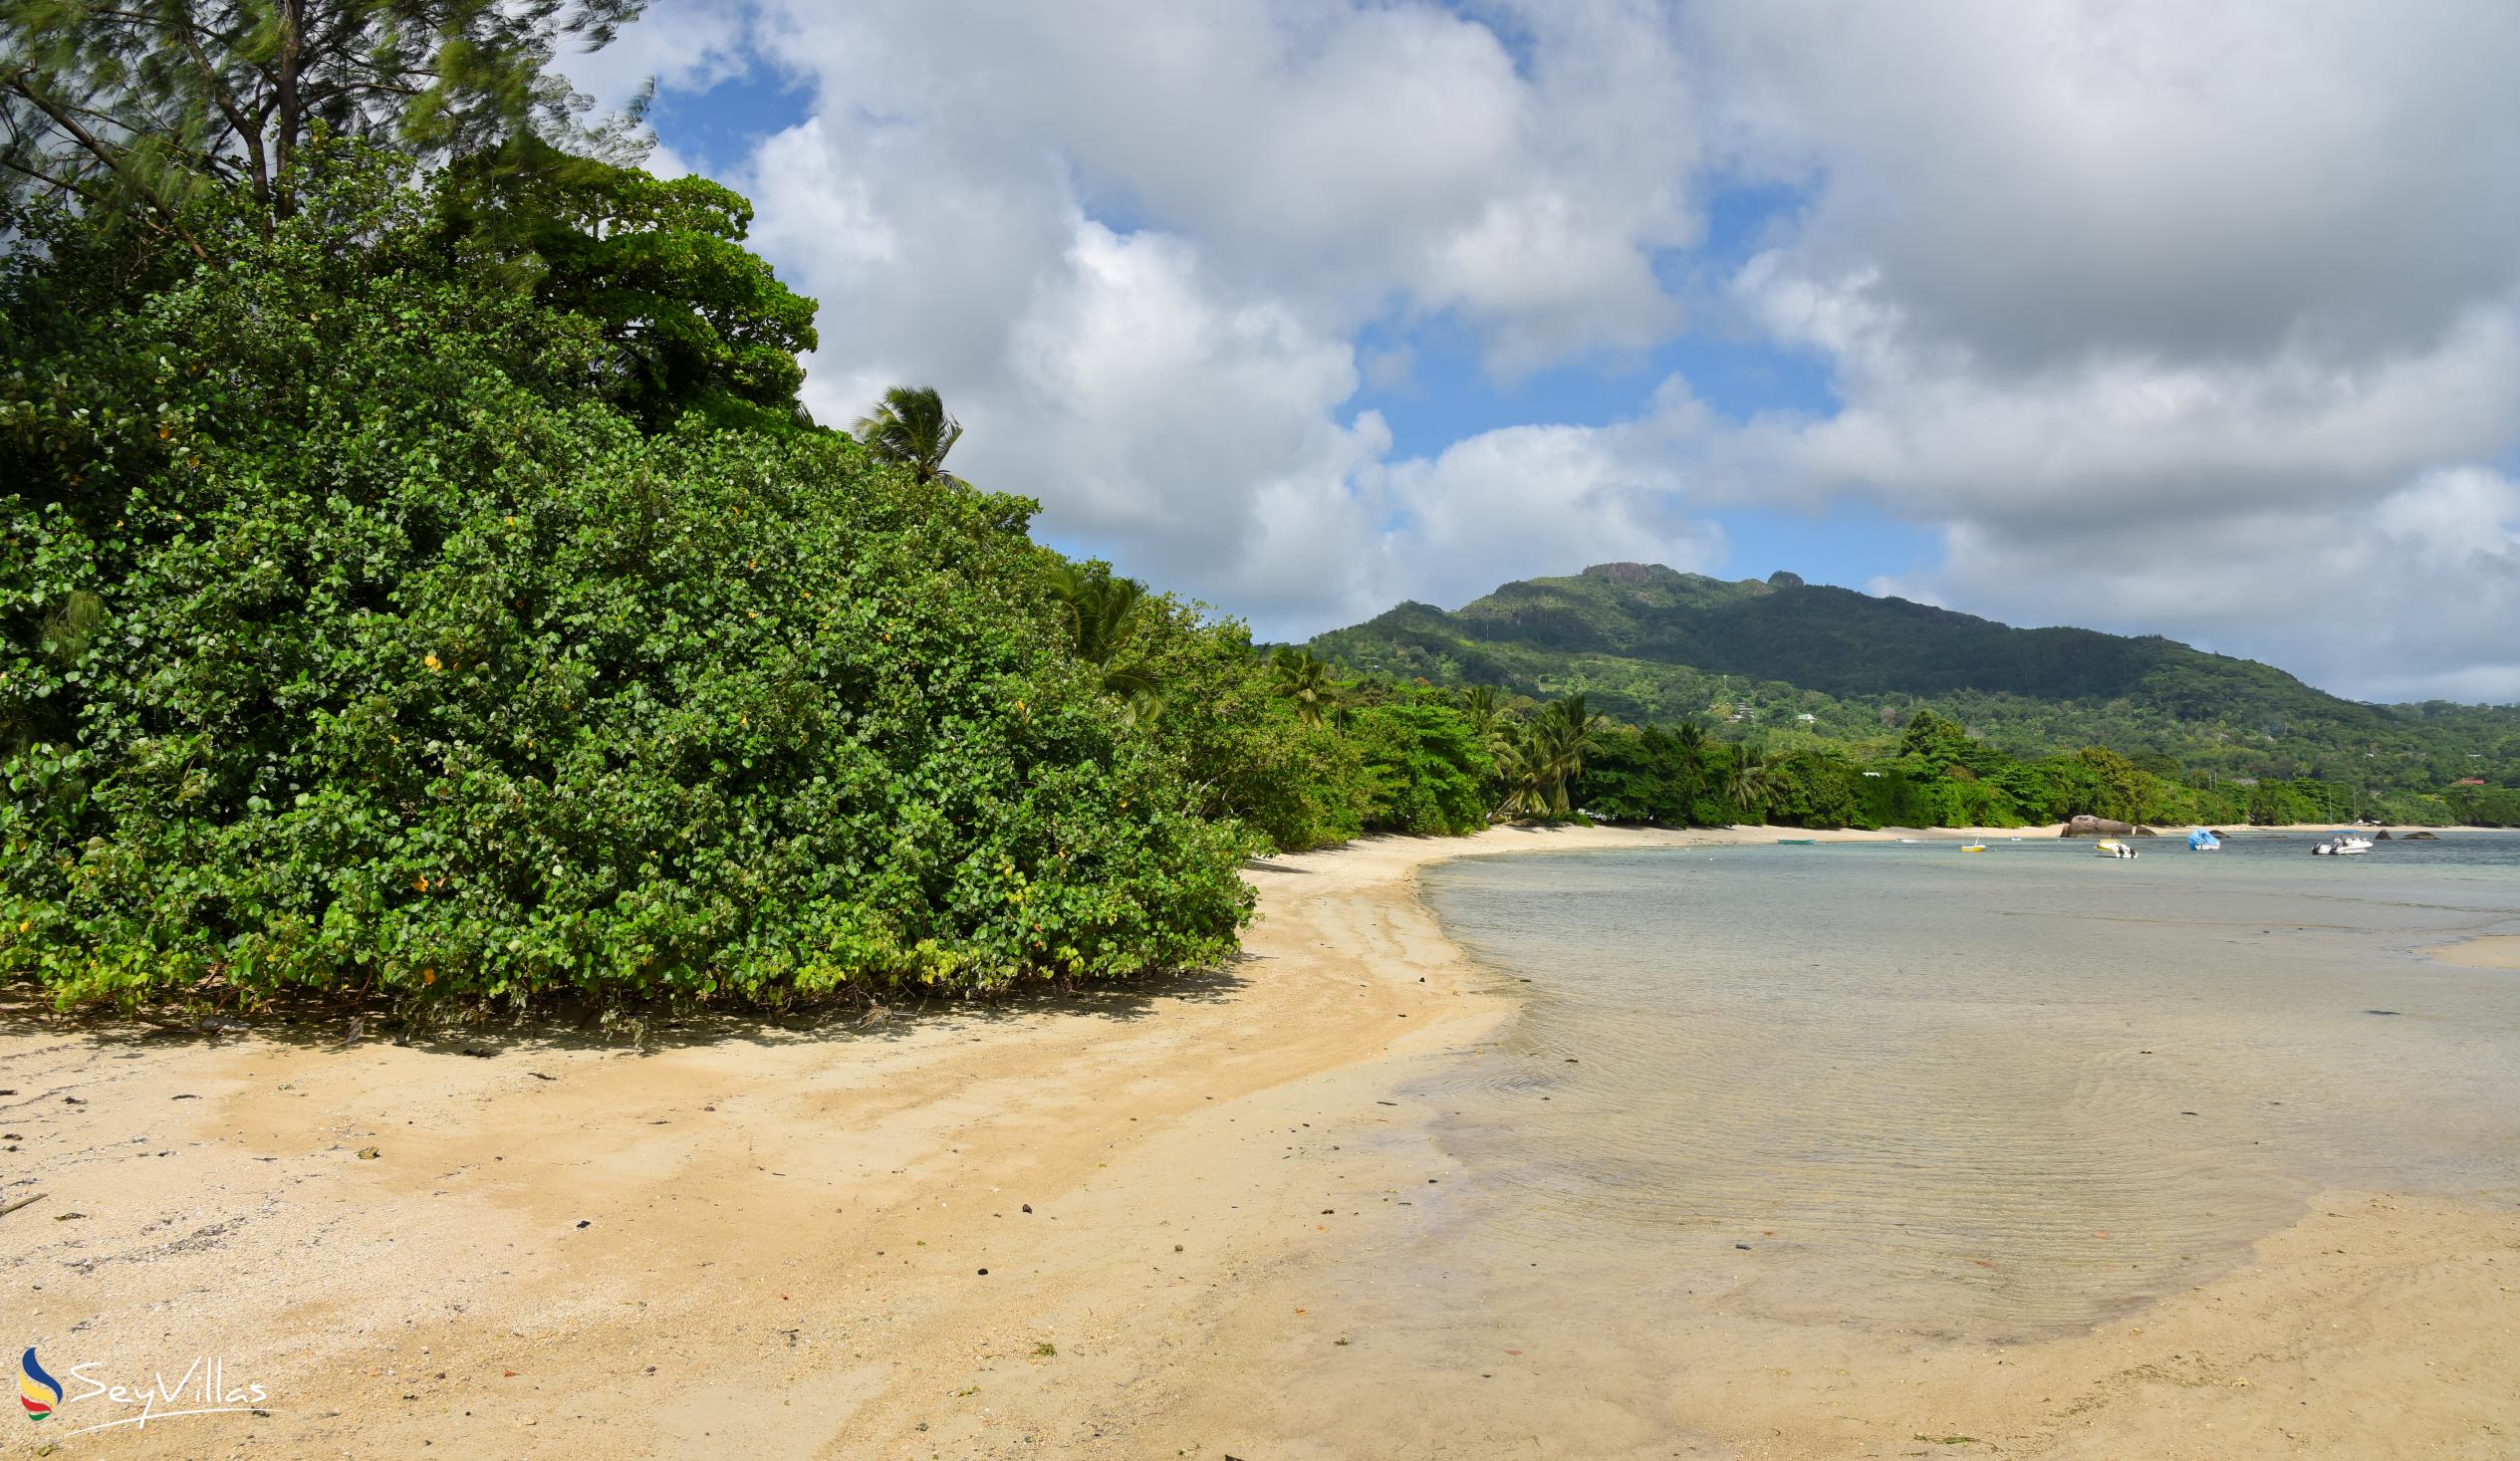 Foto 11: Anse Boileau - Mahé (Seychelles)